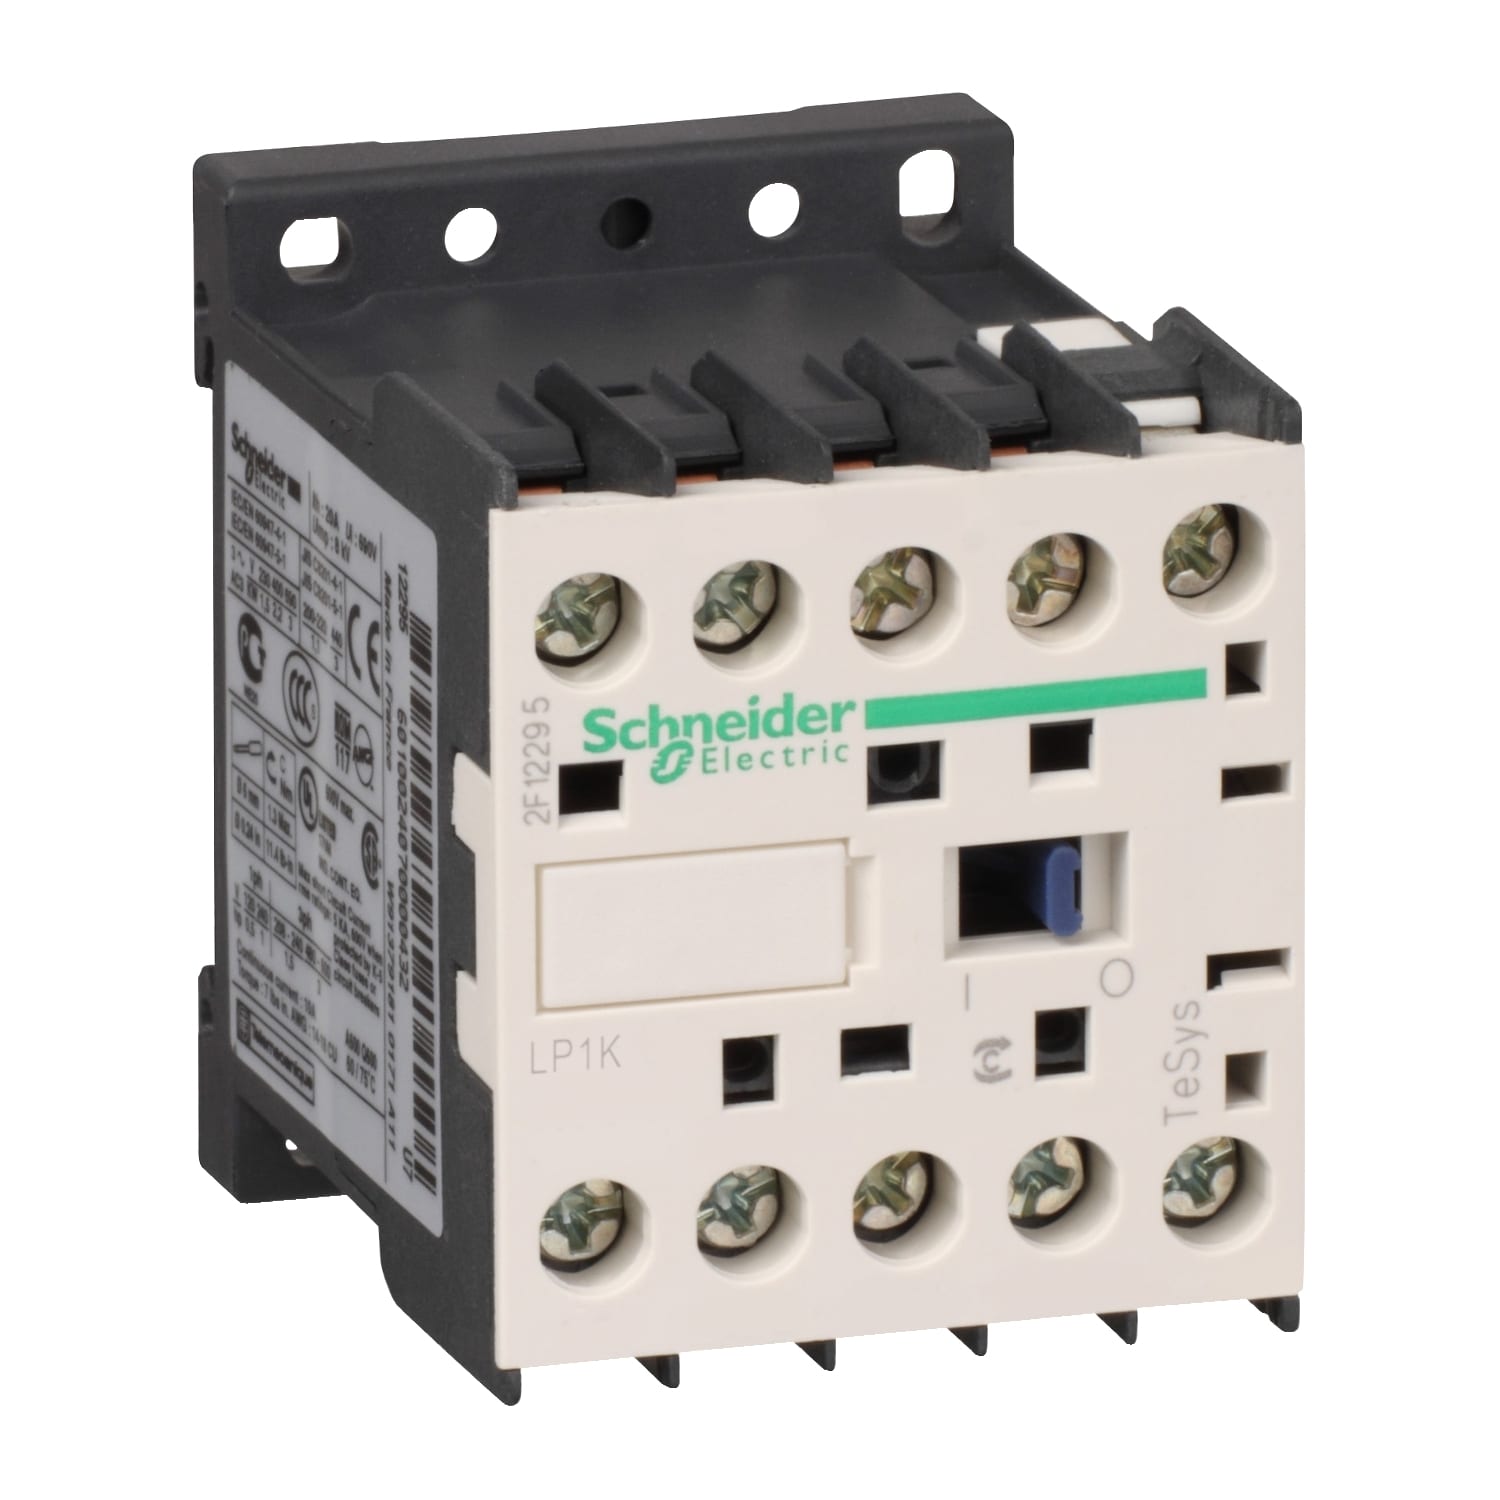 Schneider Electric - TeSys LP1K - contacteur - 3P - AC-3 440V - 9A - bobine 60Vcc